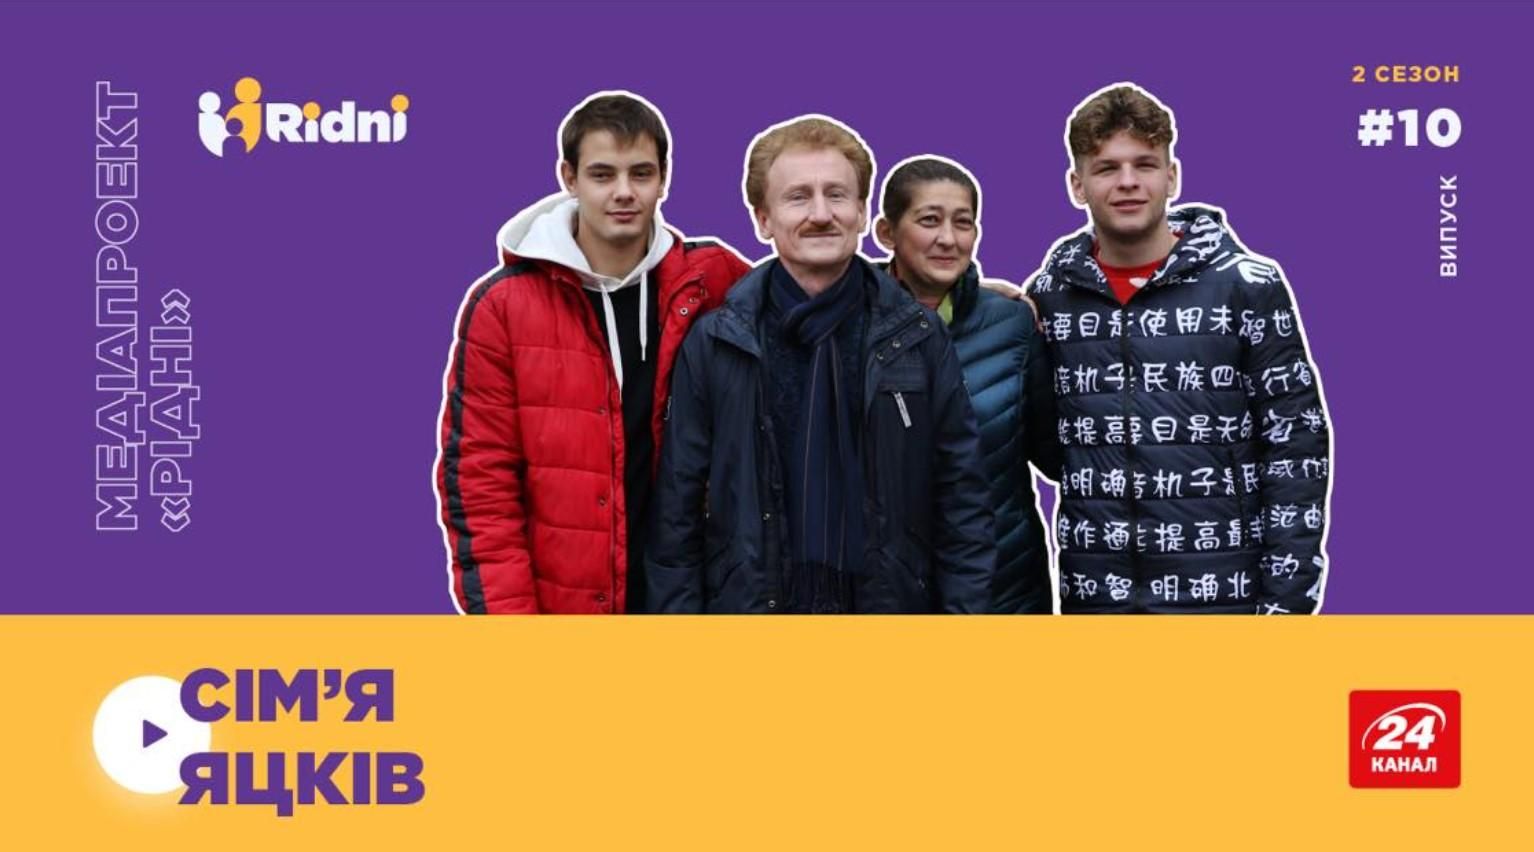 Справжній зв'язок тата і сина, – щемлива історія усиновлення завдяки музиці - Україна новини - 24 Канал